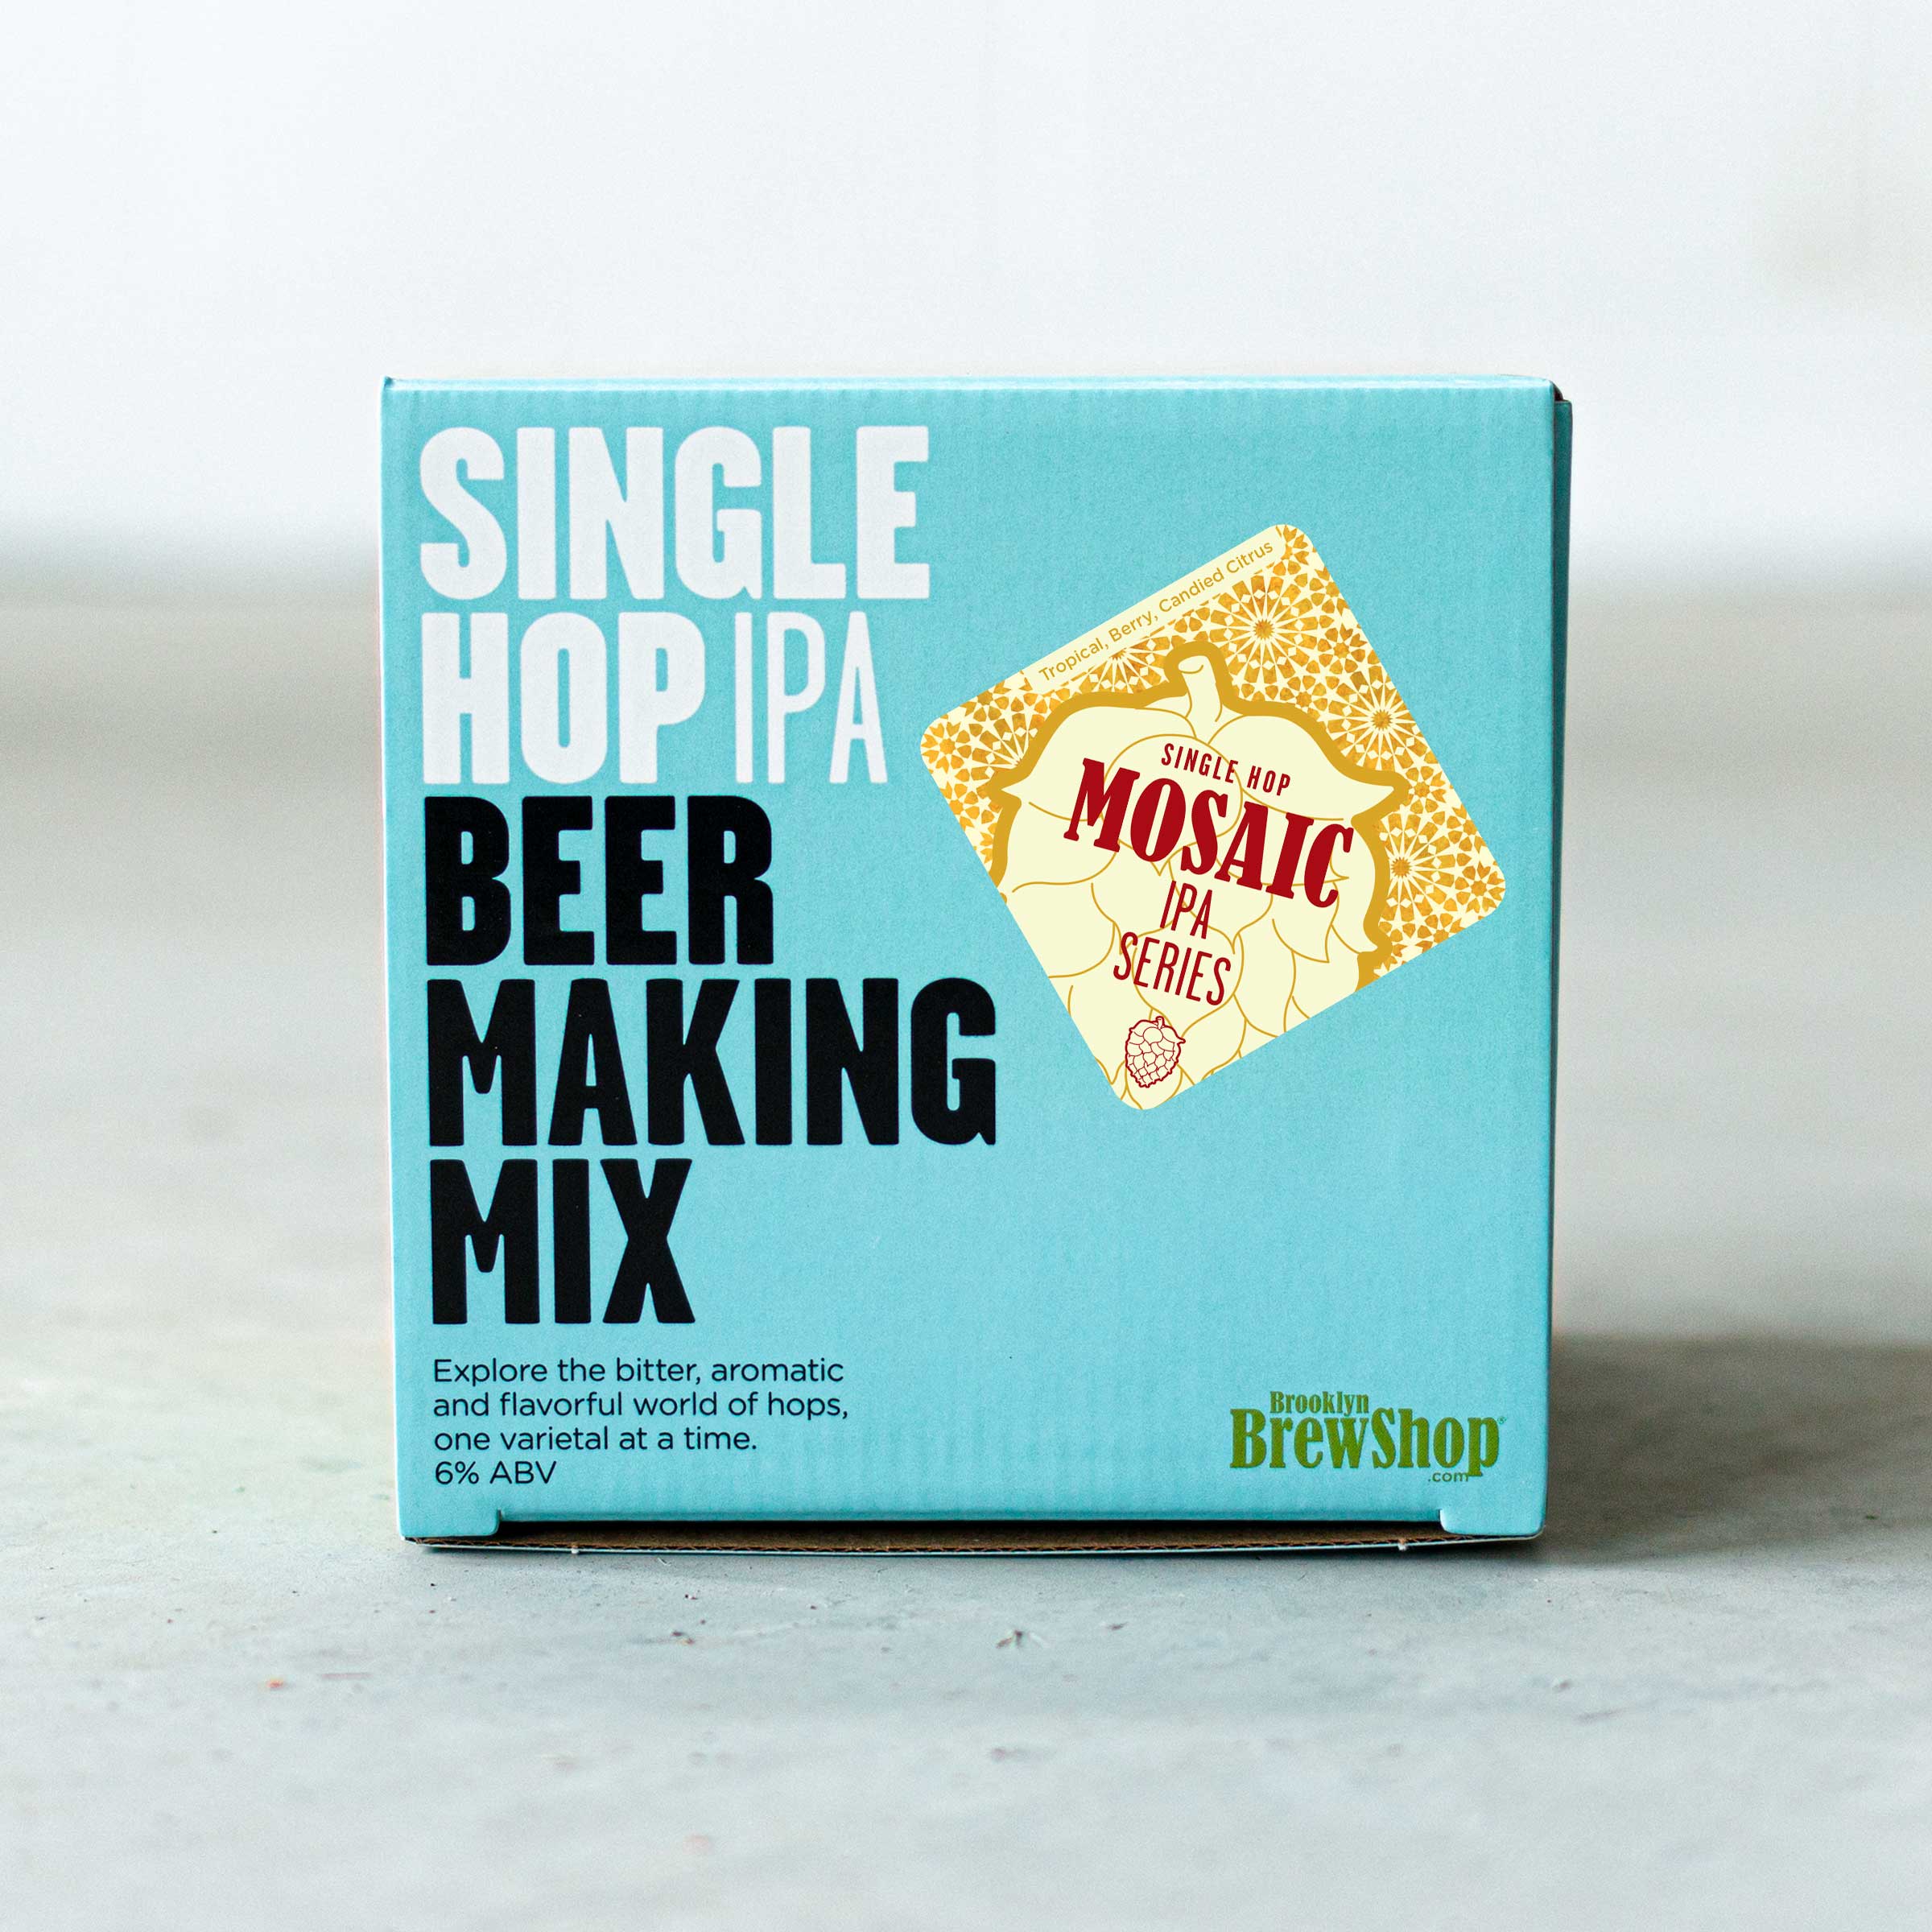 Mosaic Hop IPA: Mix - Brew Shop